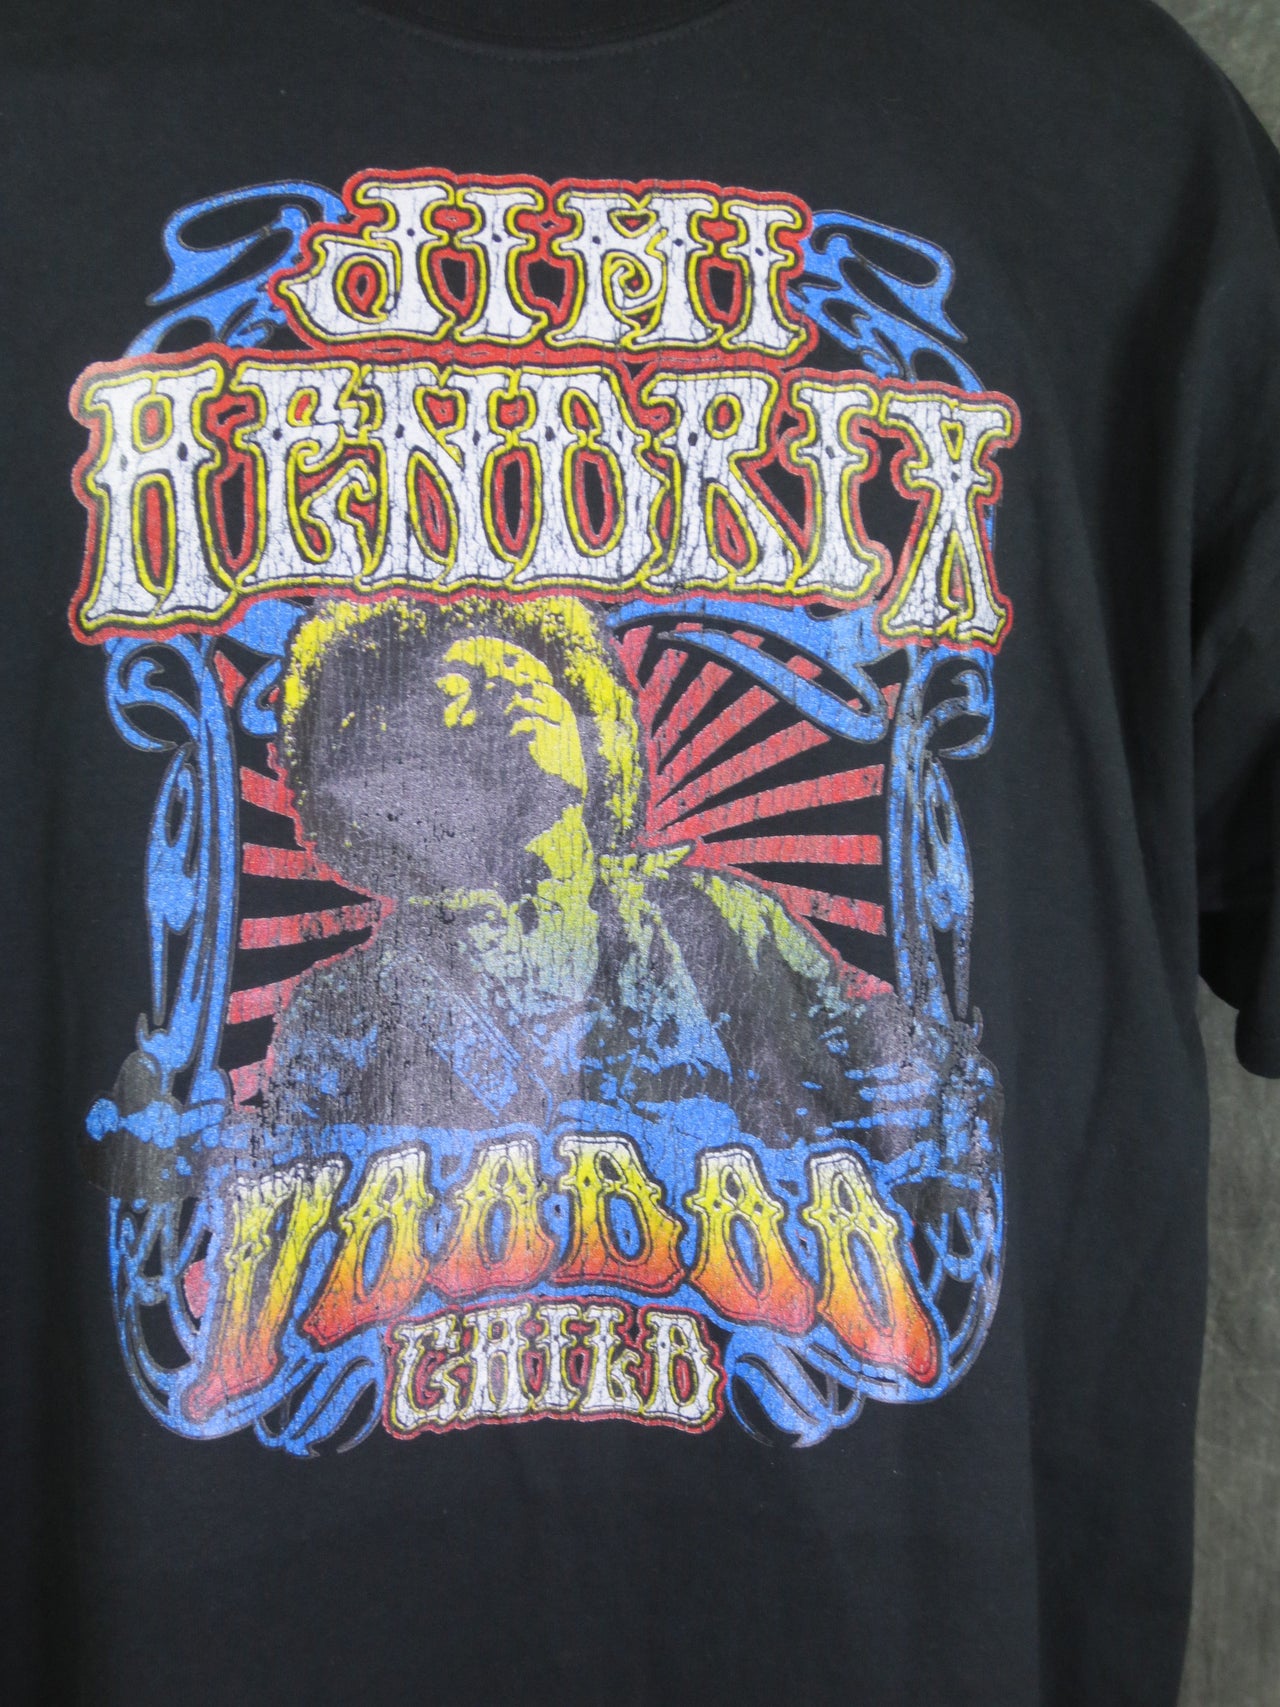 Jimi Hendrix Voodoo child tshirt - TshirtNow.net - 1